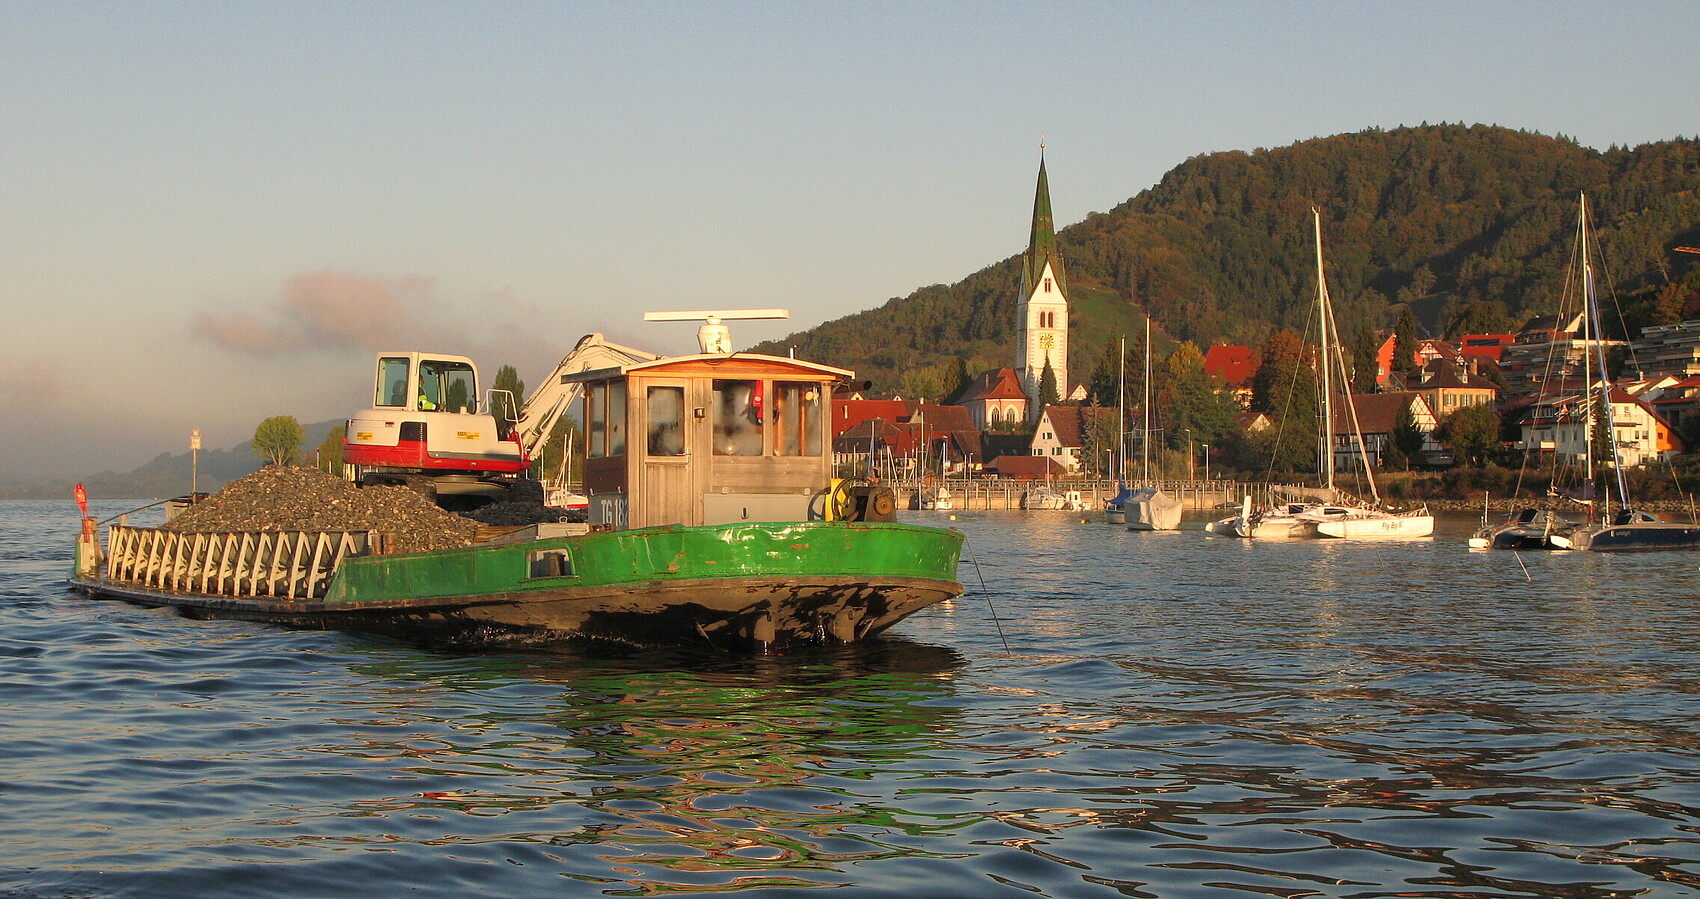 Bild zeigt ein Schiff auf dem See, im Hintergrund eine Stadt